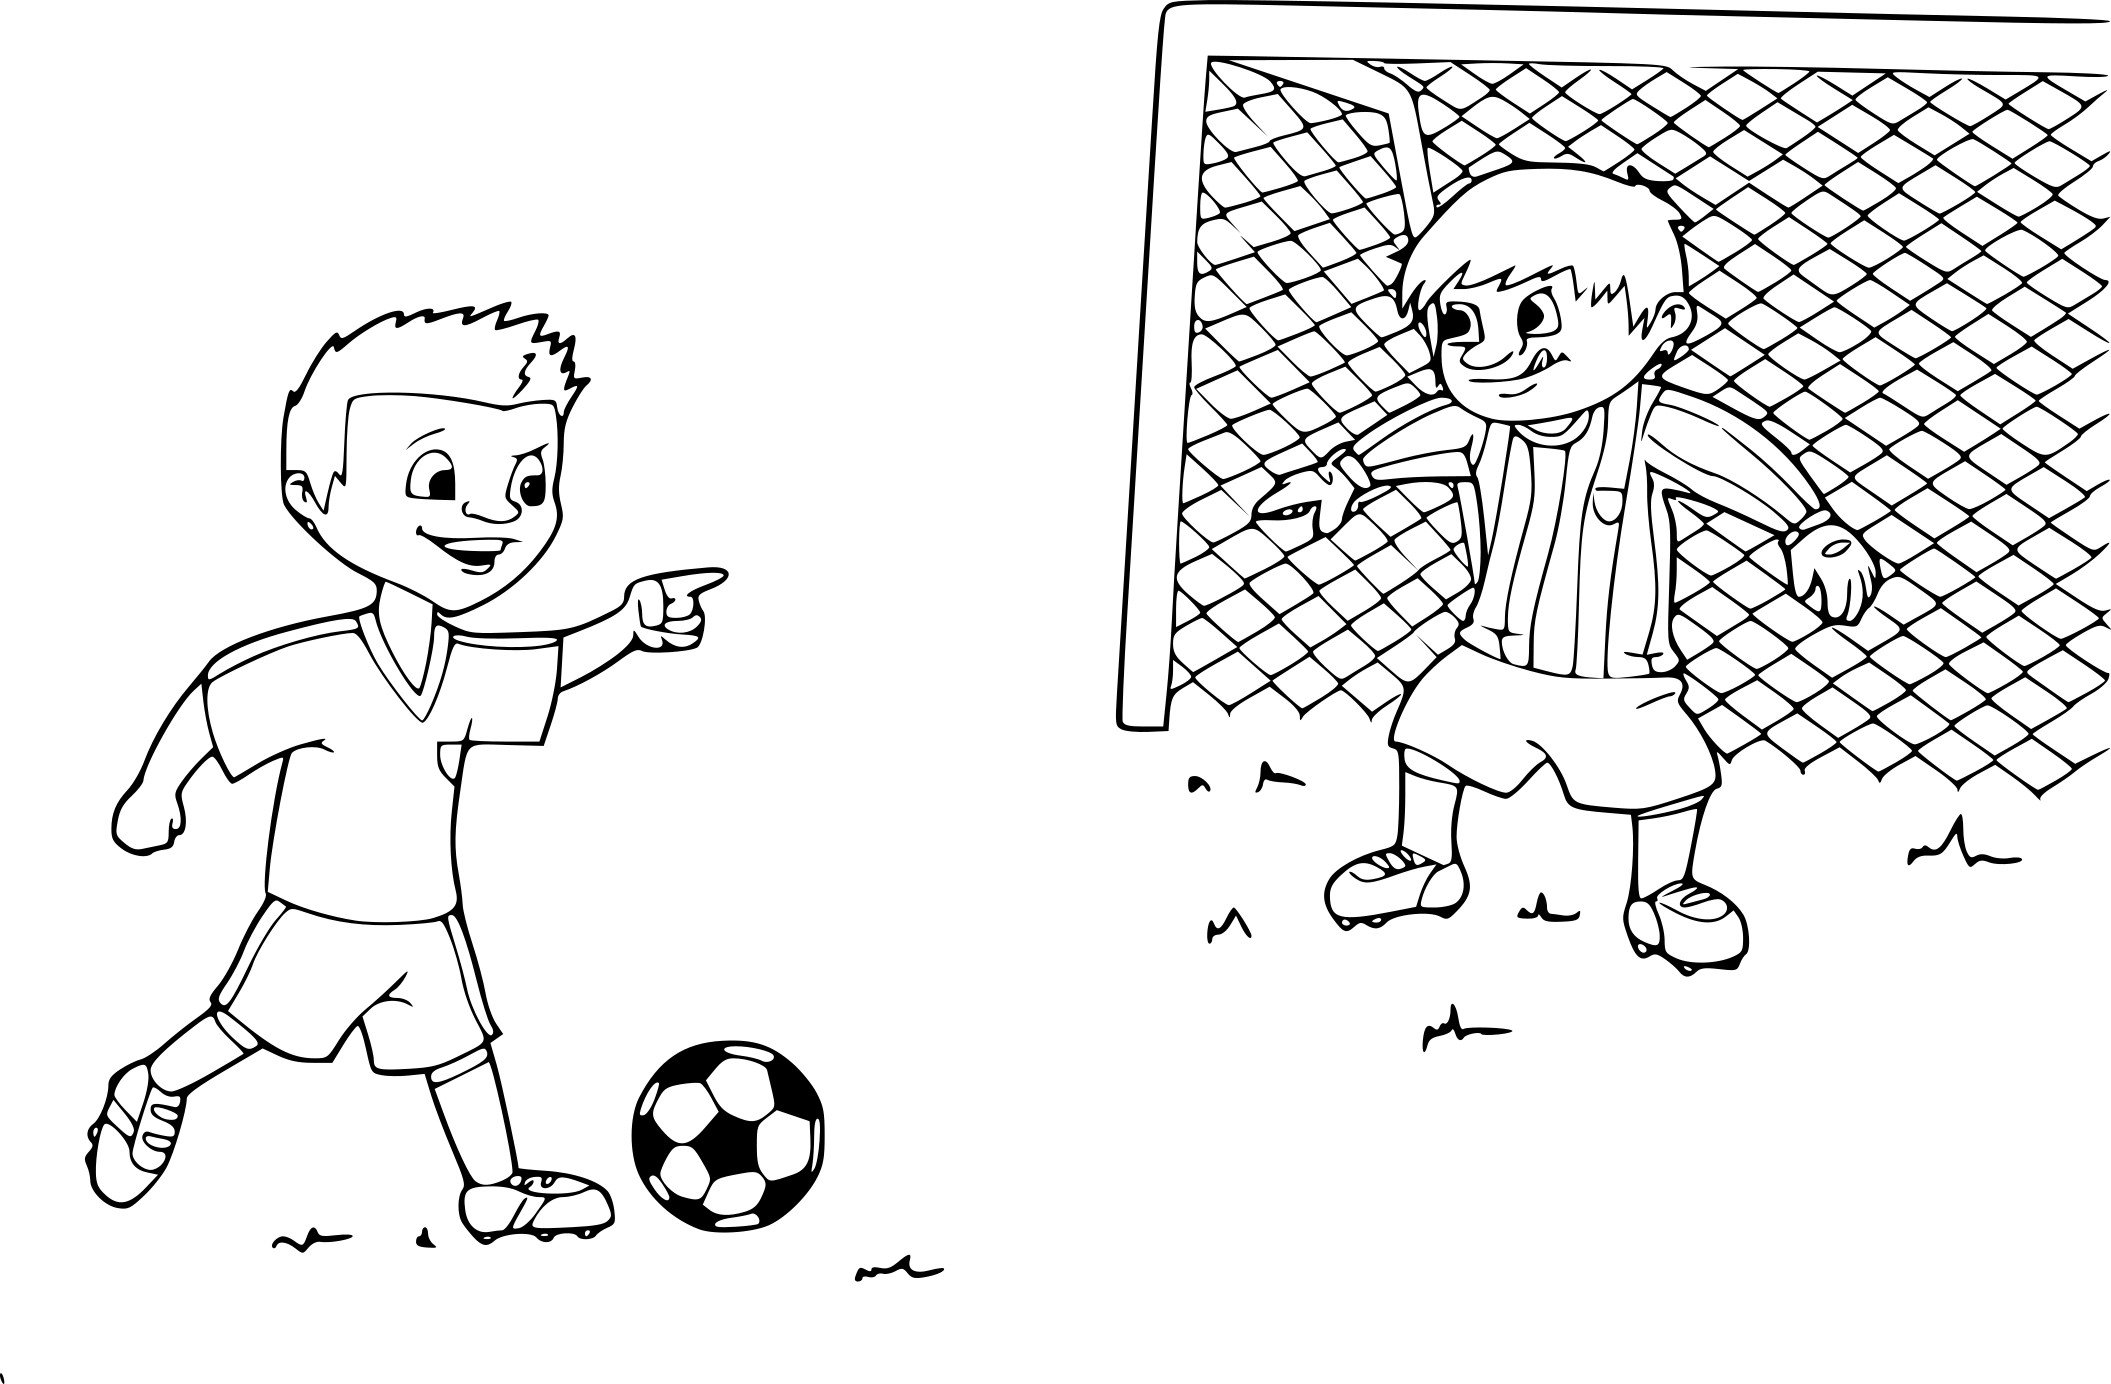 Футбол раскраска для детей